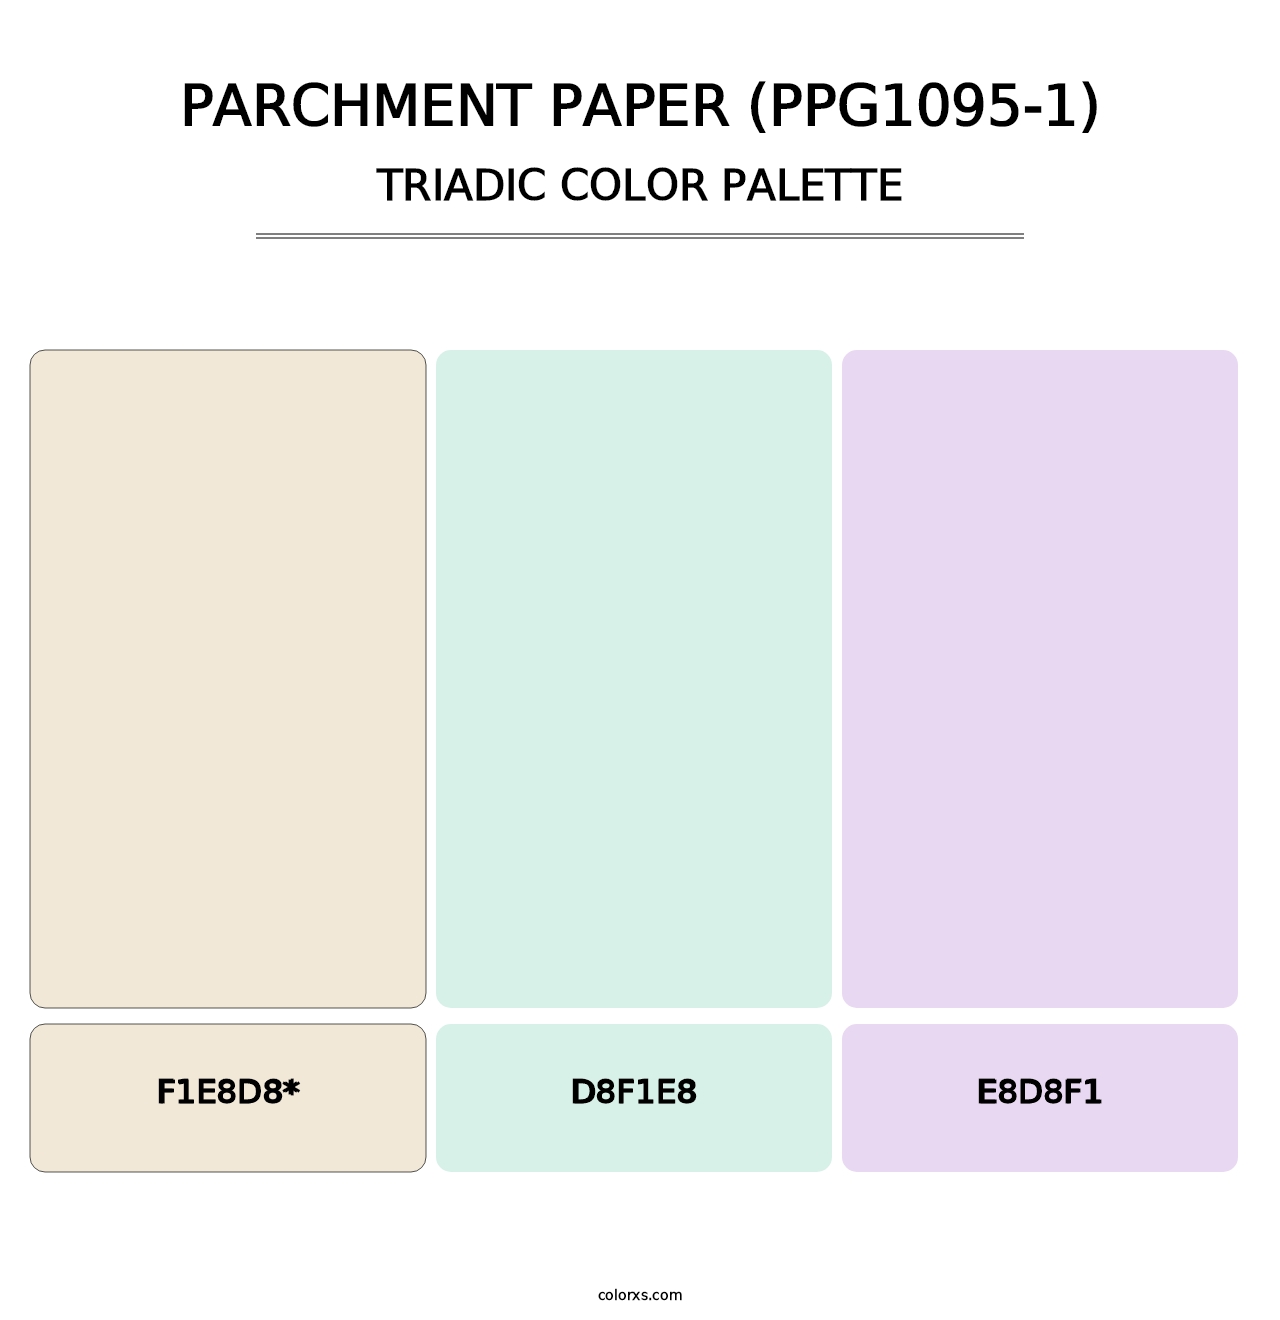 Parchment Paper (PPG1095-1) - Triadic Color Palette